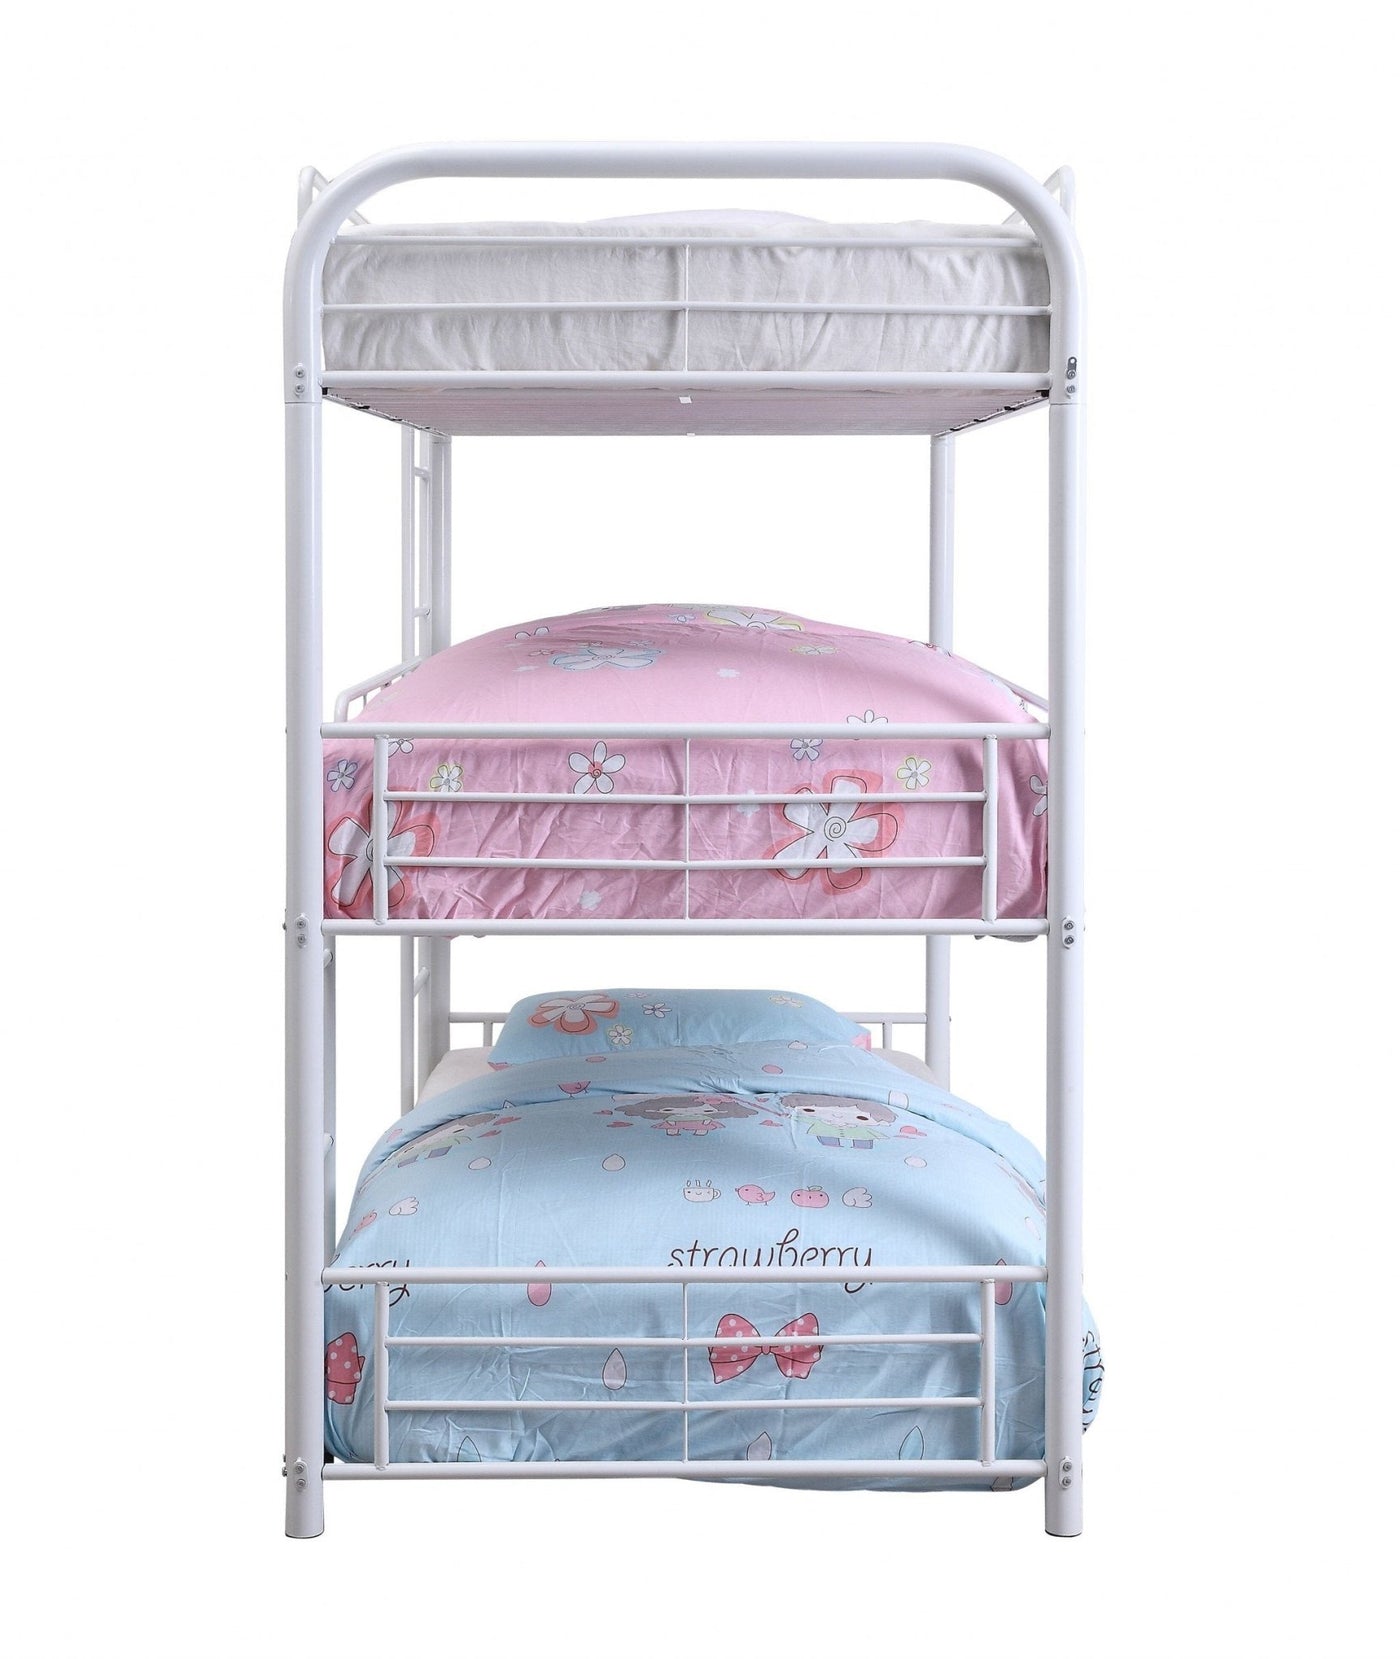 Cairo Triple Metal Bunk Bed (Twin/Twin or Full/Full)